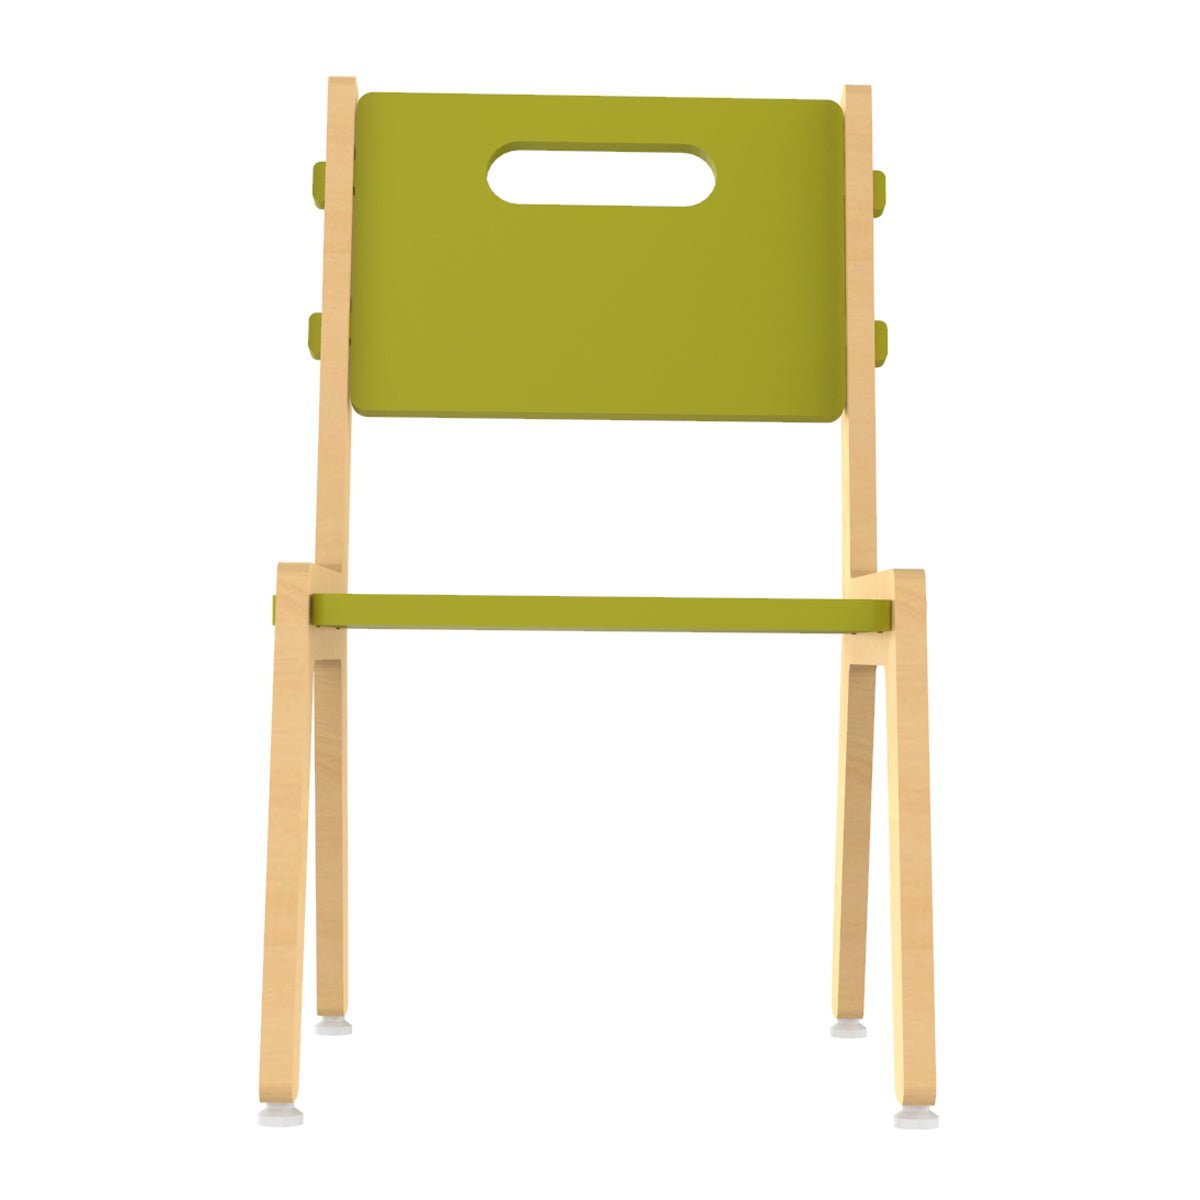 X&Y Grey Guava Chair - Green - FG090918G